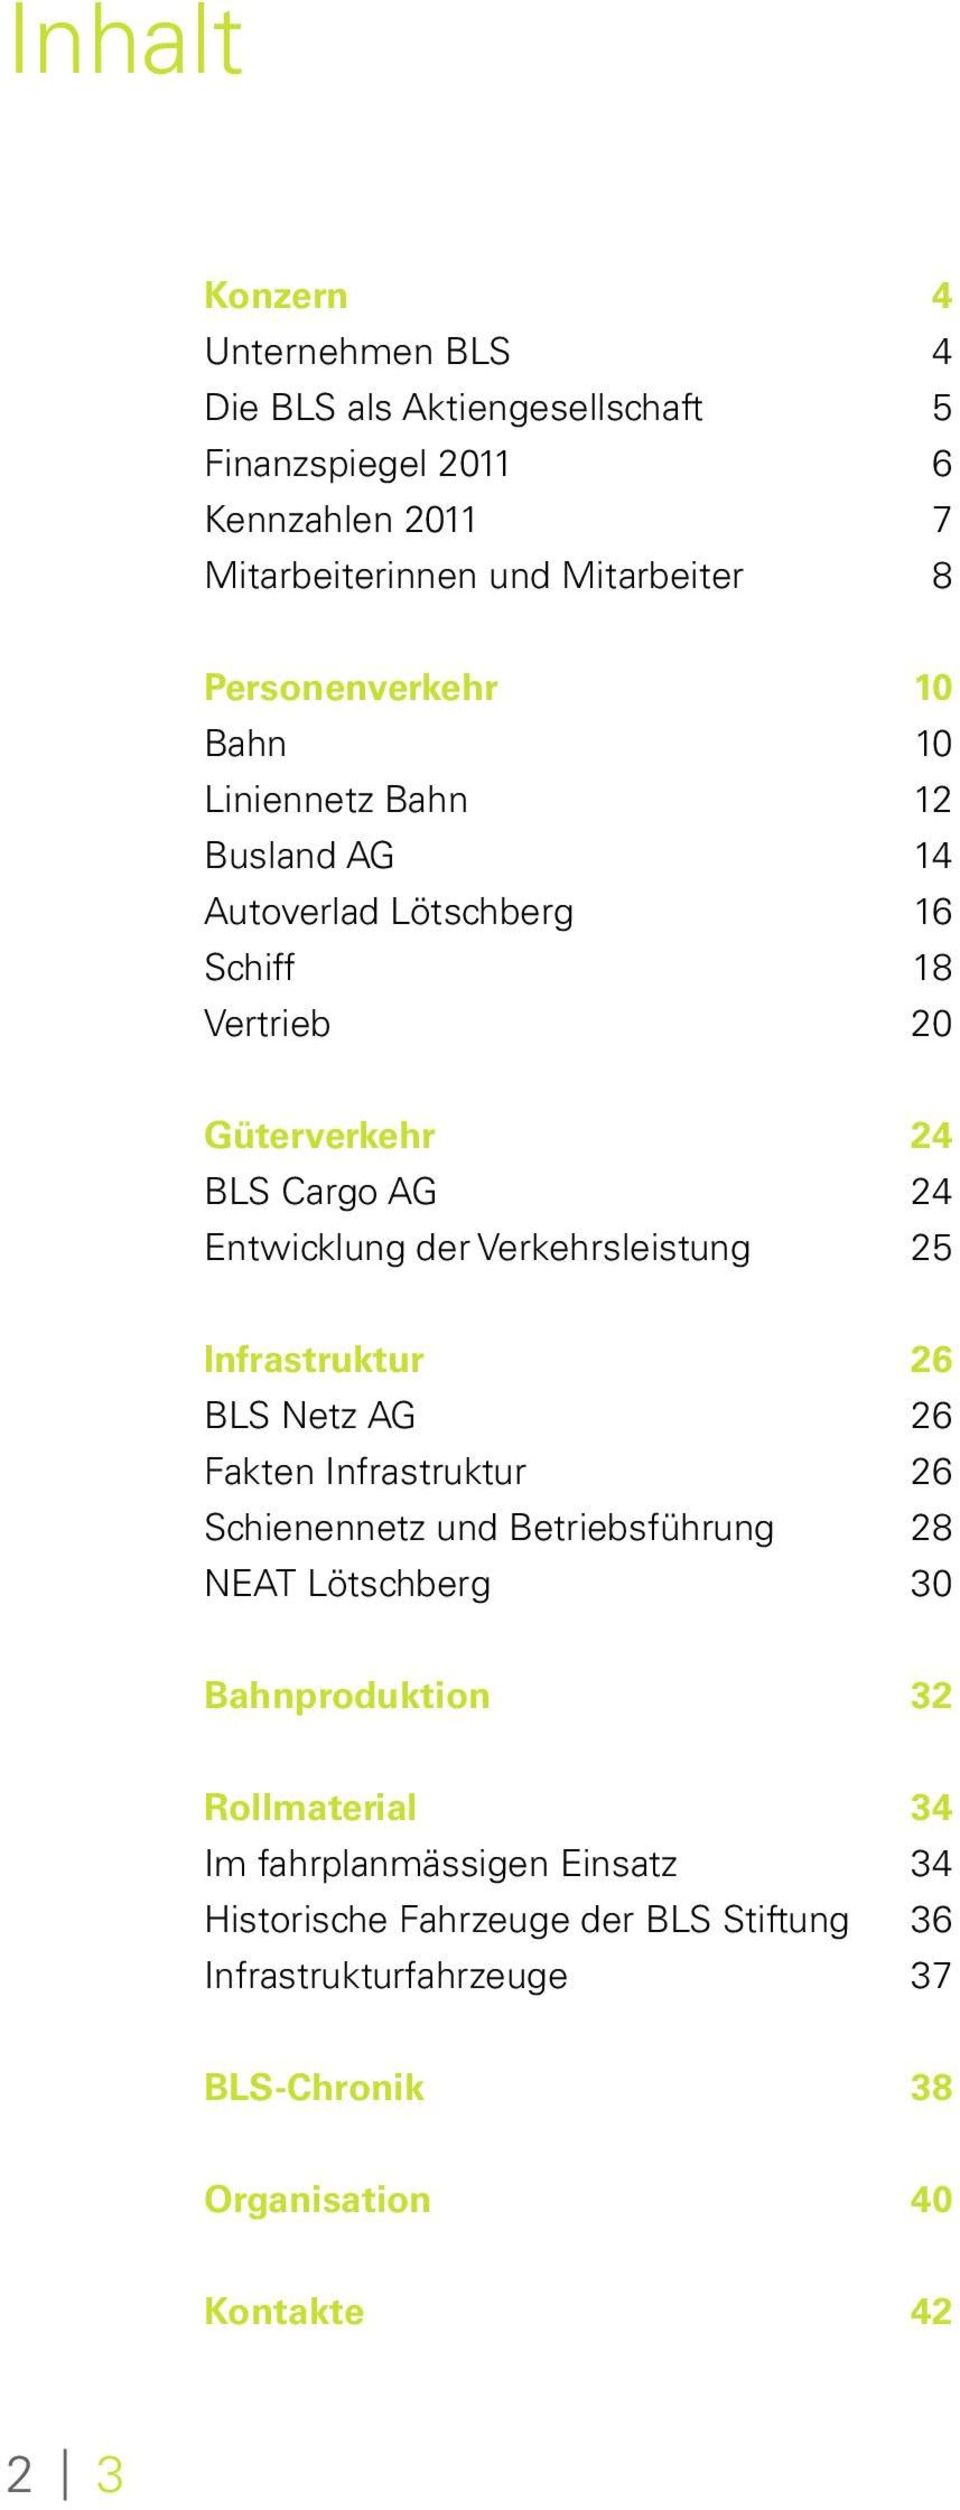 der Verkehrsleistung 25 Infrastruktur 26 BLS Netz AG 26 Fakten Infrastruktur 26 Schienennetz und Betriebsführung 28 NEAT Lötschberg 30 Bahnproduktion